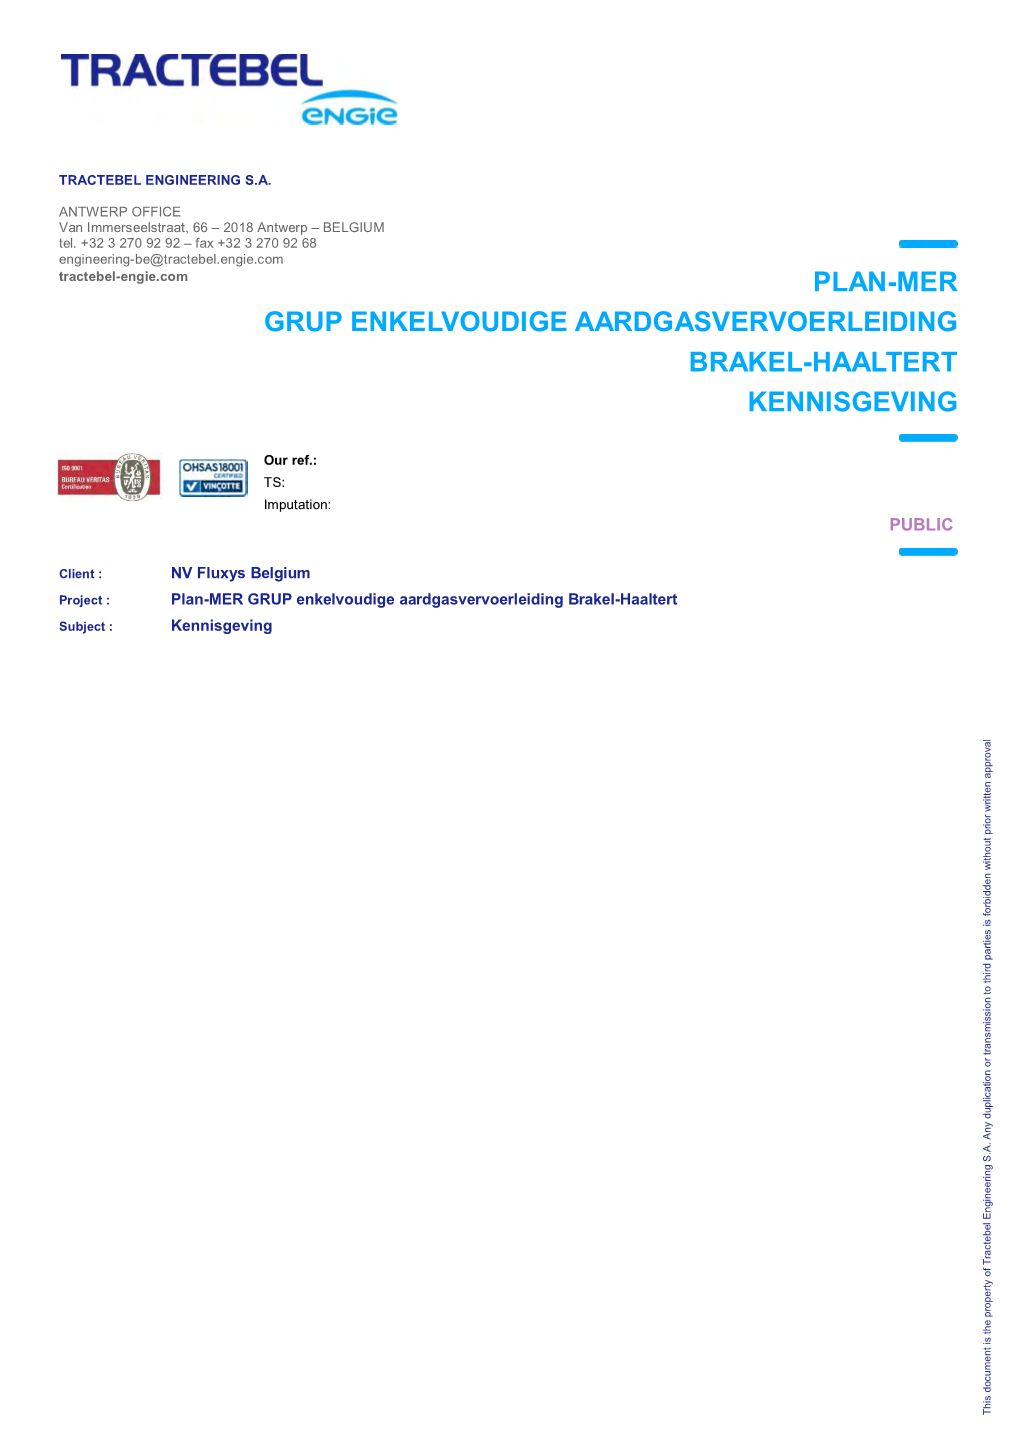 Plan-Mer Grup Enkelvoudige Aardgasvervoerleiding Brakel-Haaltert Kennisgeving